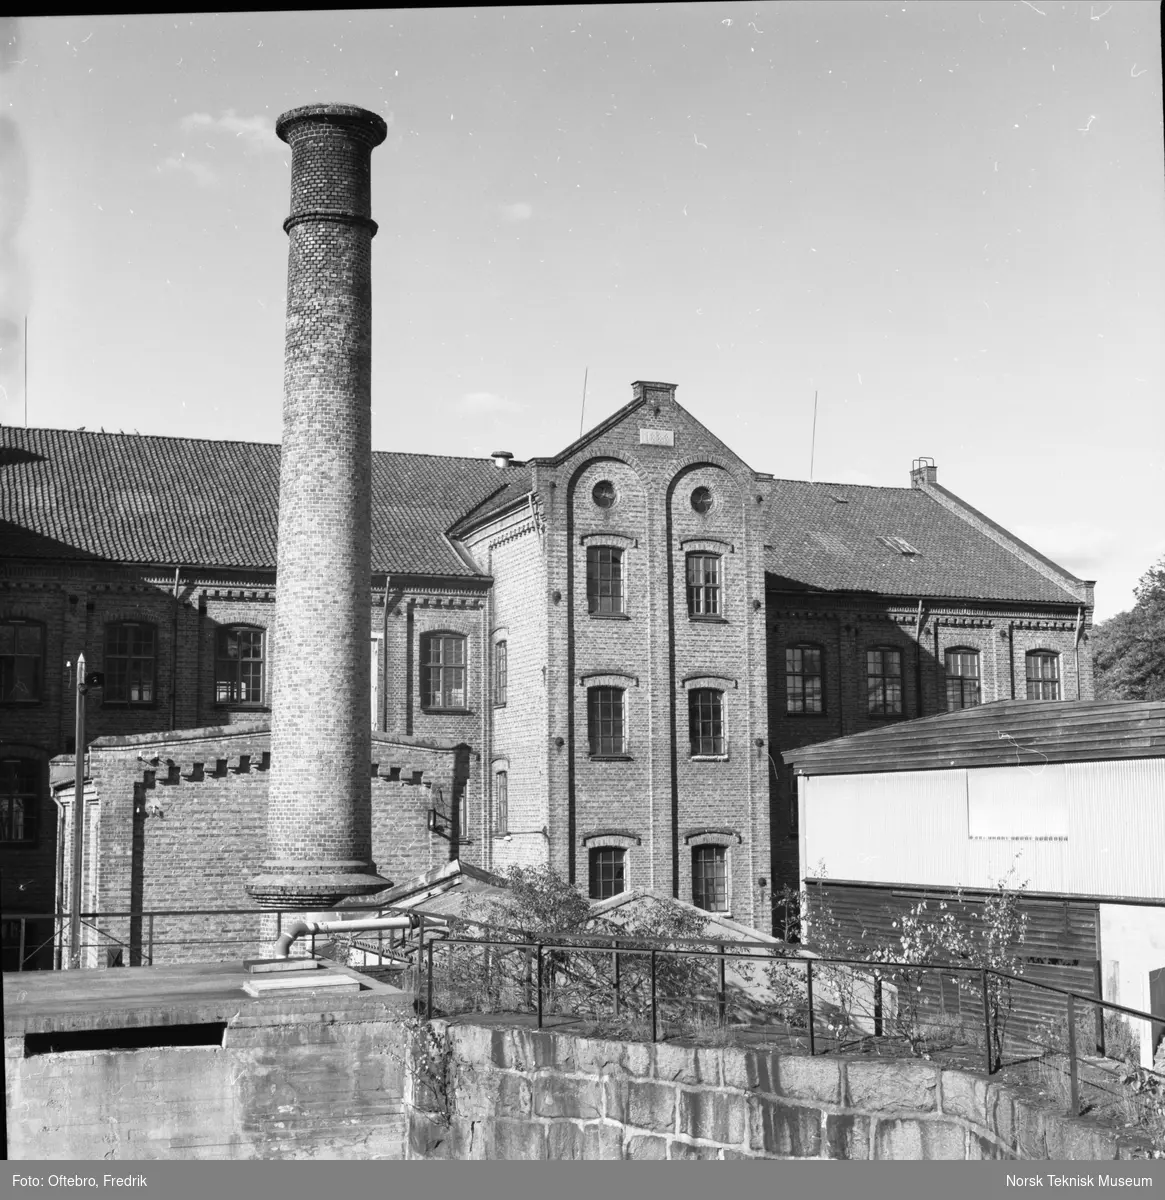 Halden Nye Bomuldsspinderi i Tistedalen, bygget 1889. I forgrunnen pipe og trappehus. Oppført etter tegning fra Myhrens Verksted. Fotografert 1988. 